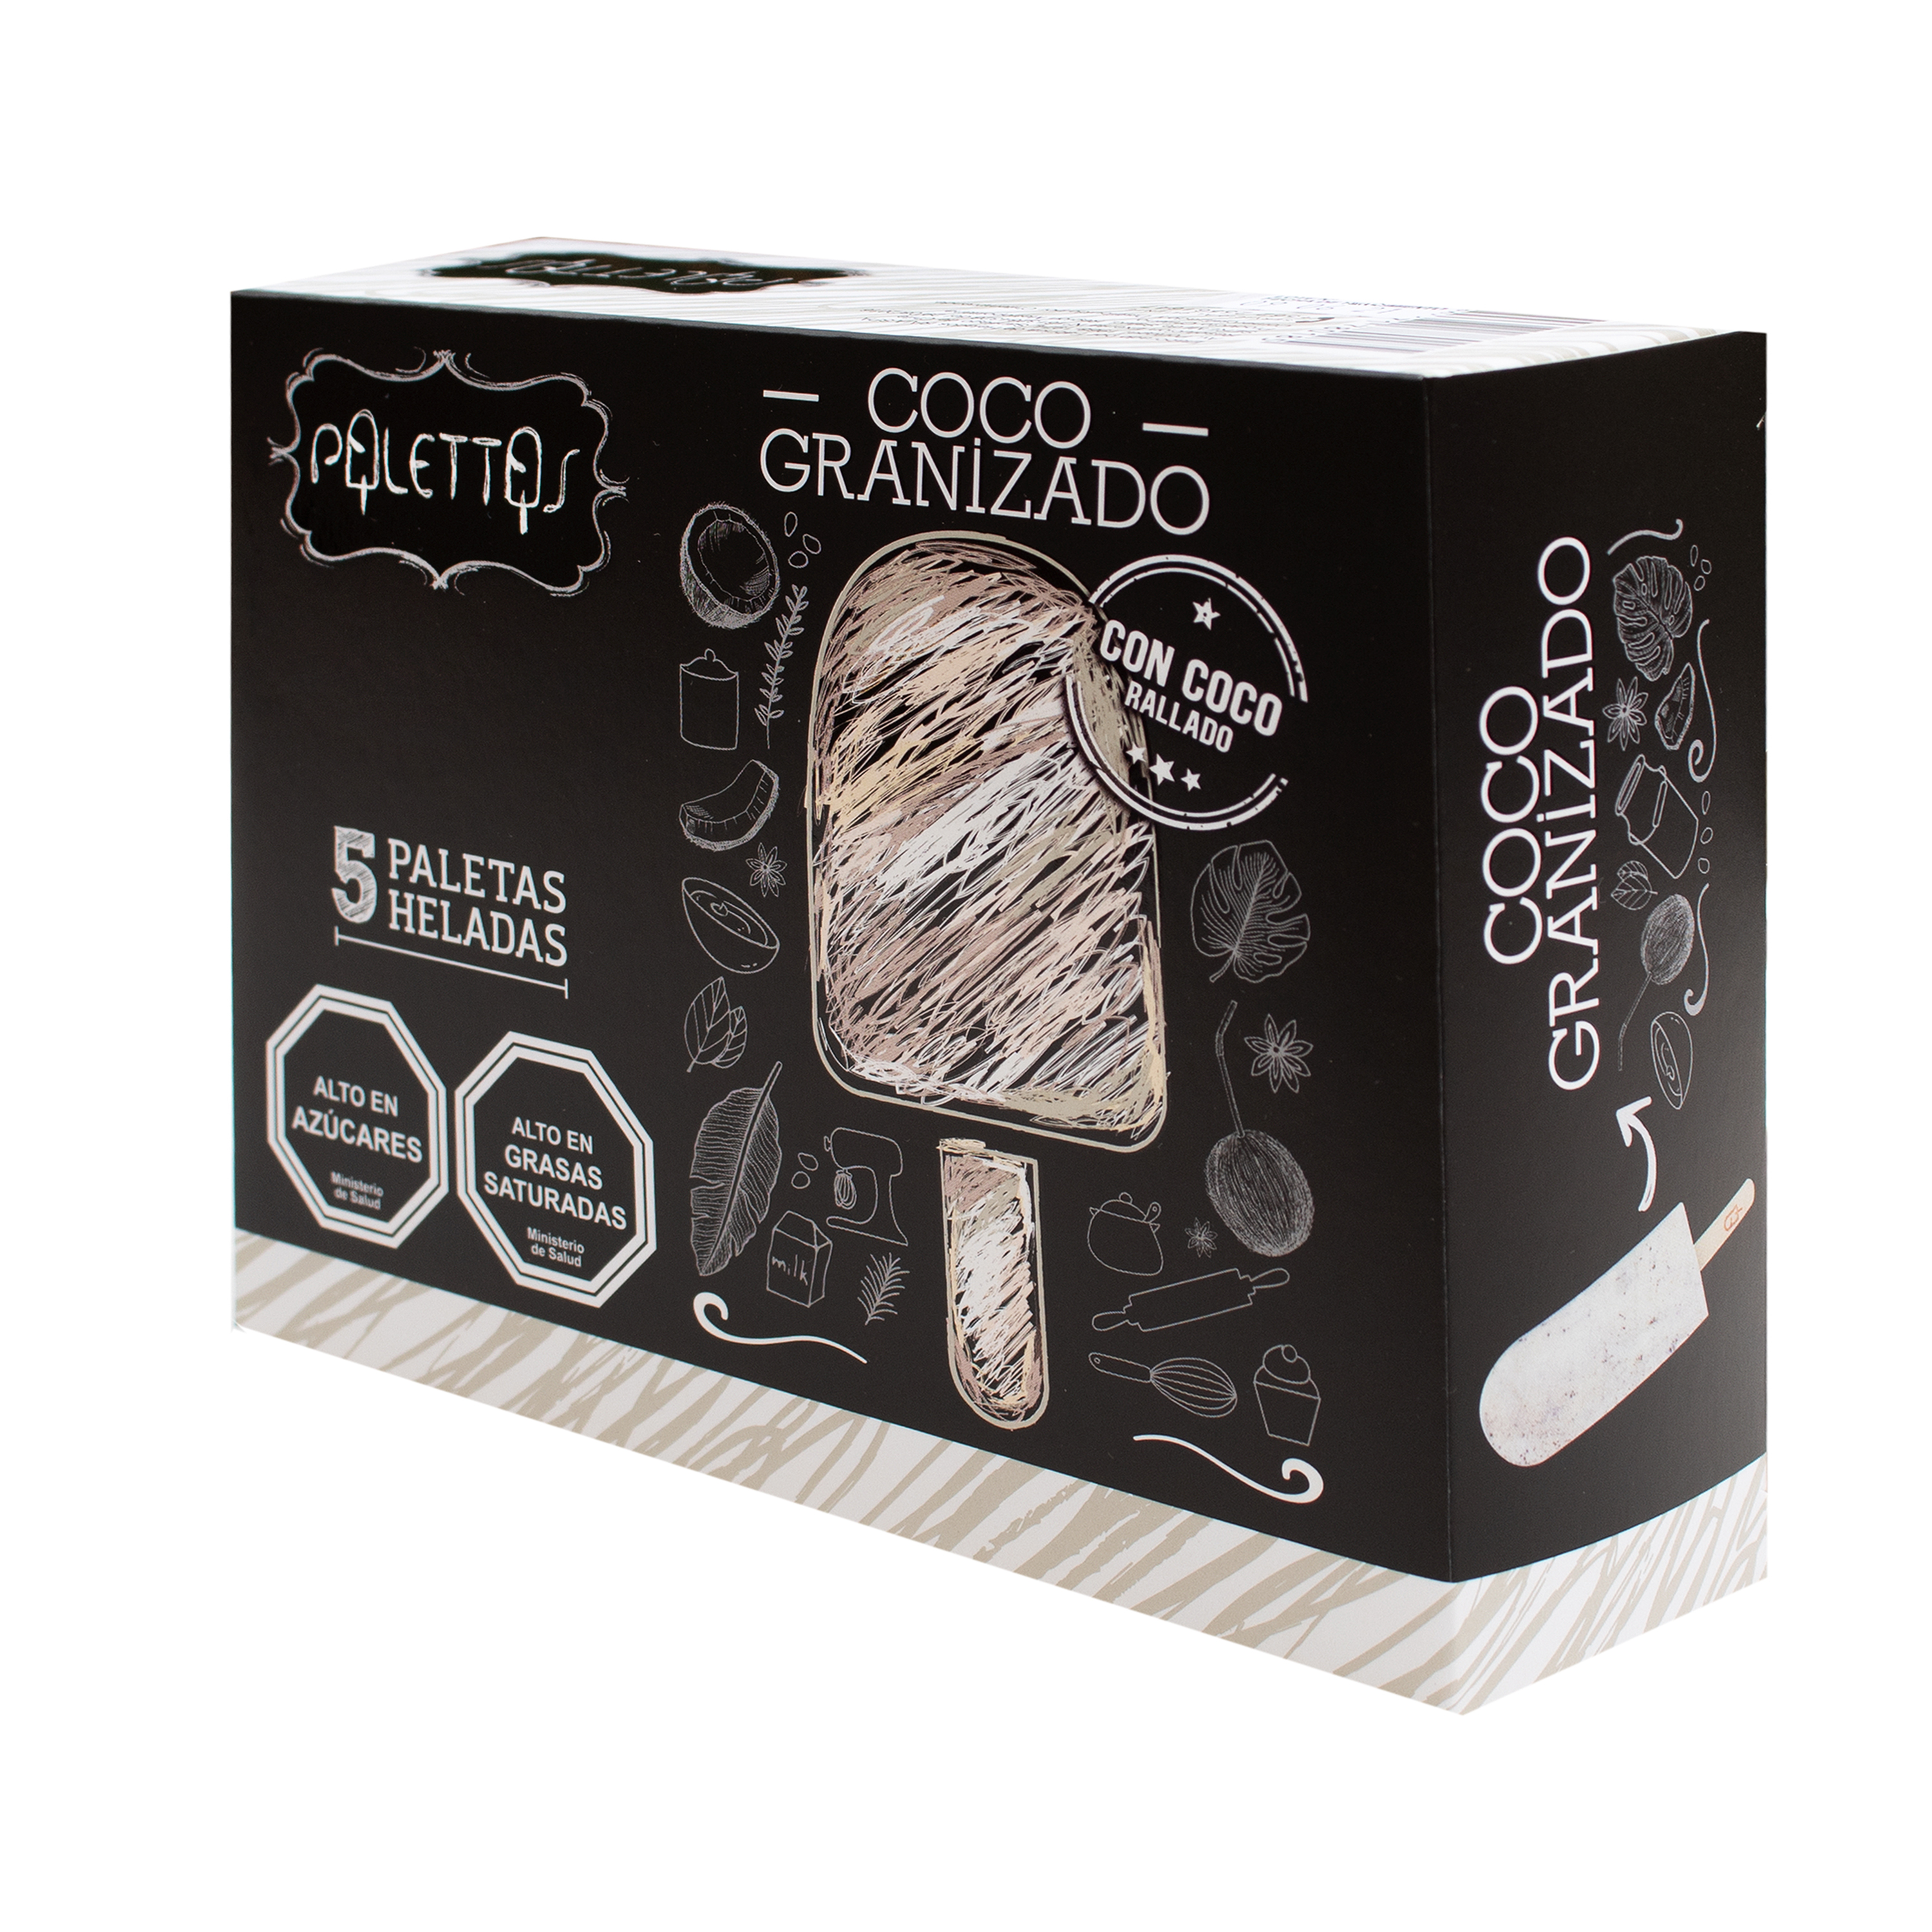 1 Caja de Palettas sabor Coco Granizado